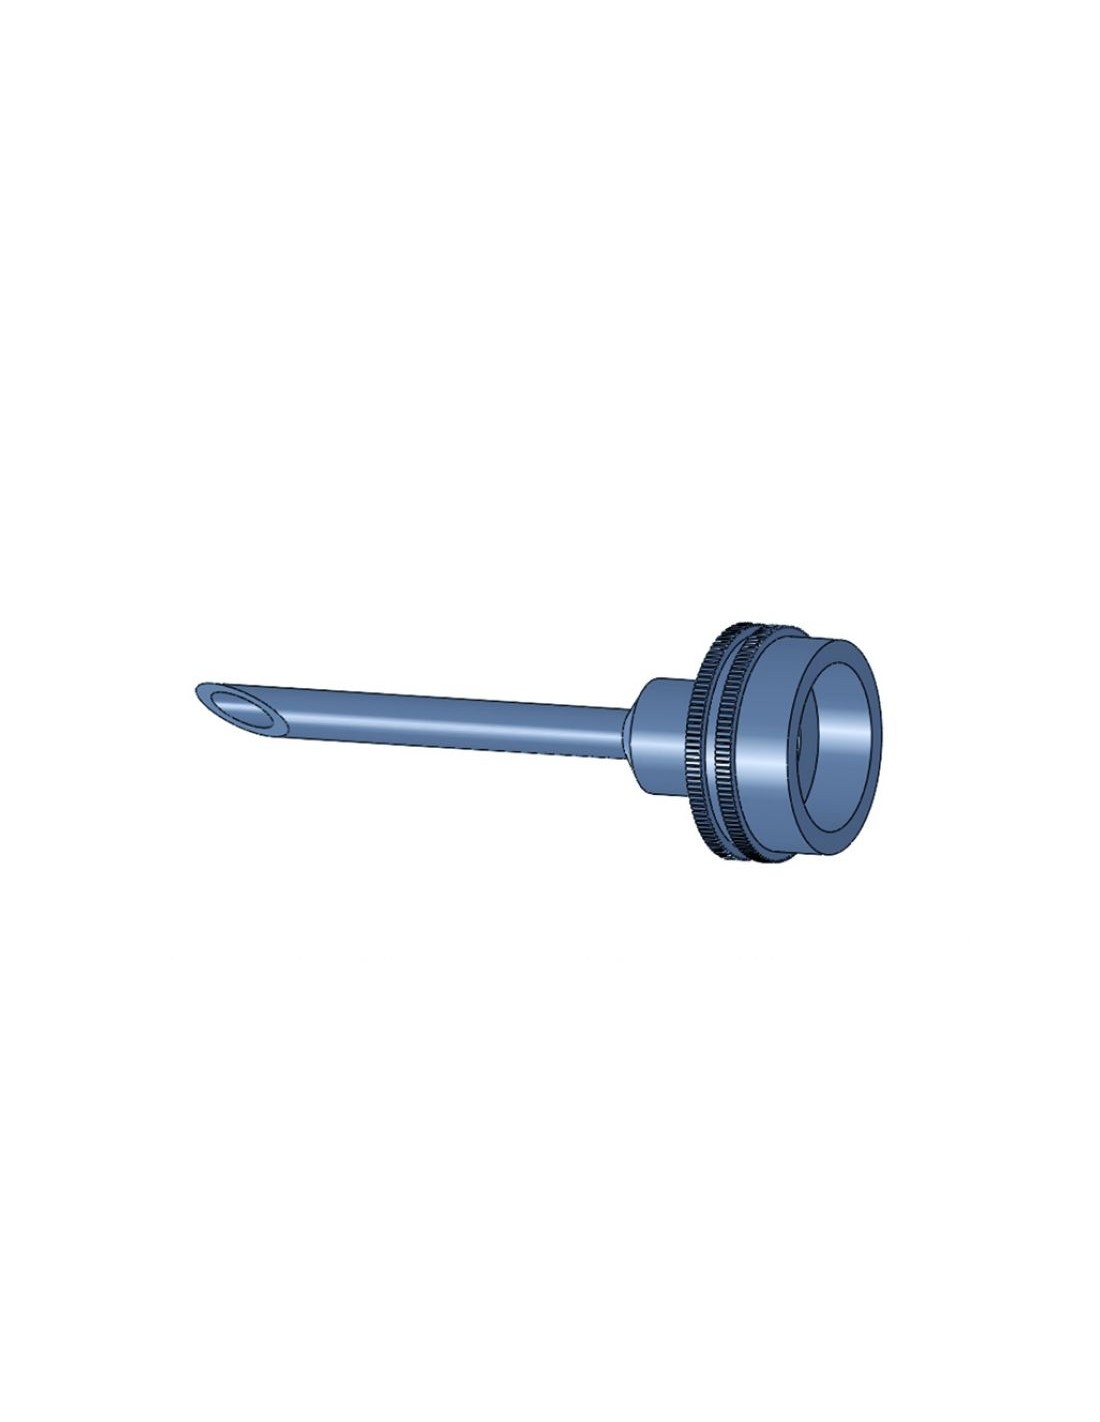 Spout ÃƒÂ¸ 6 mm for adapter